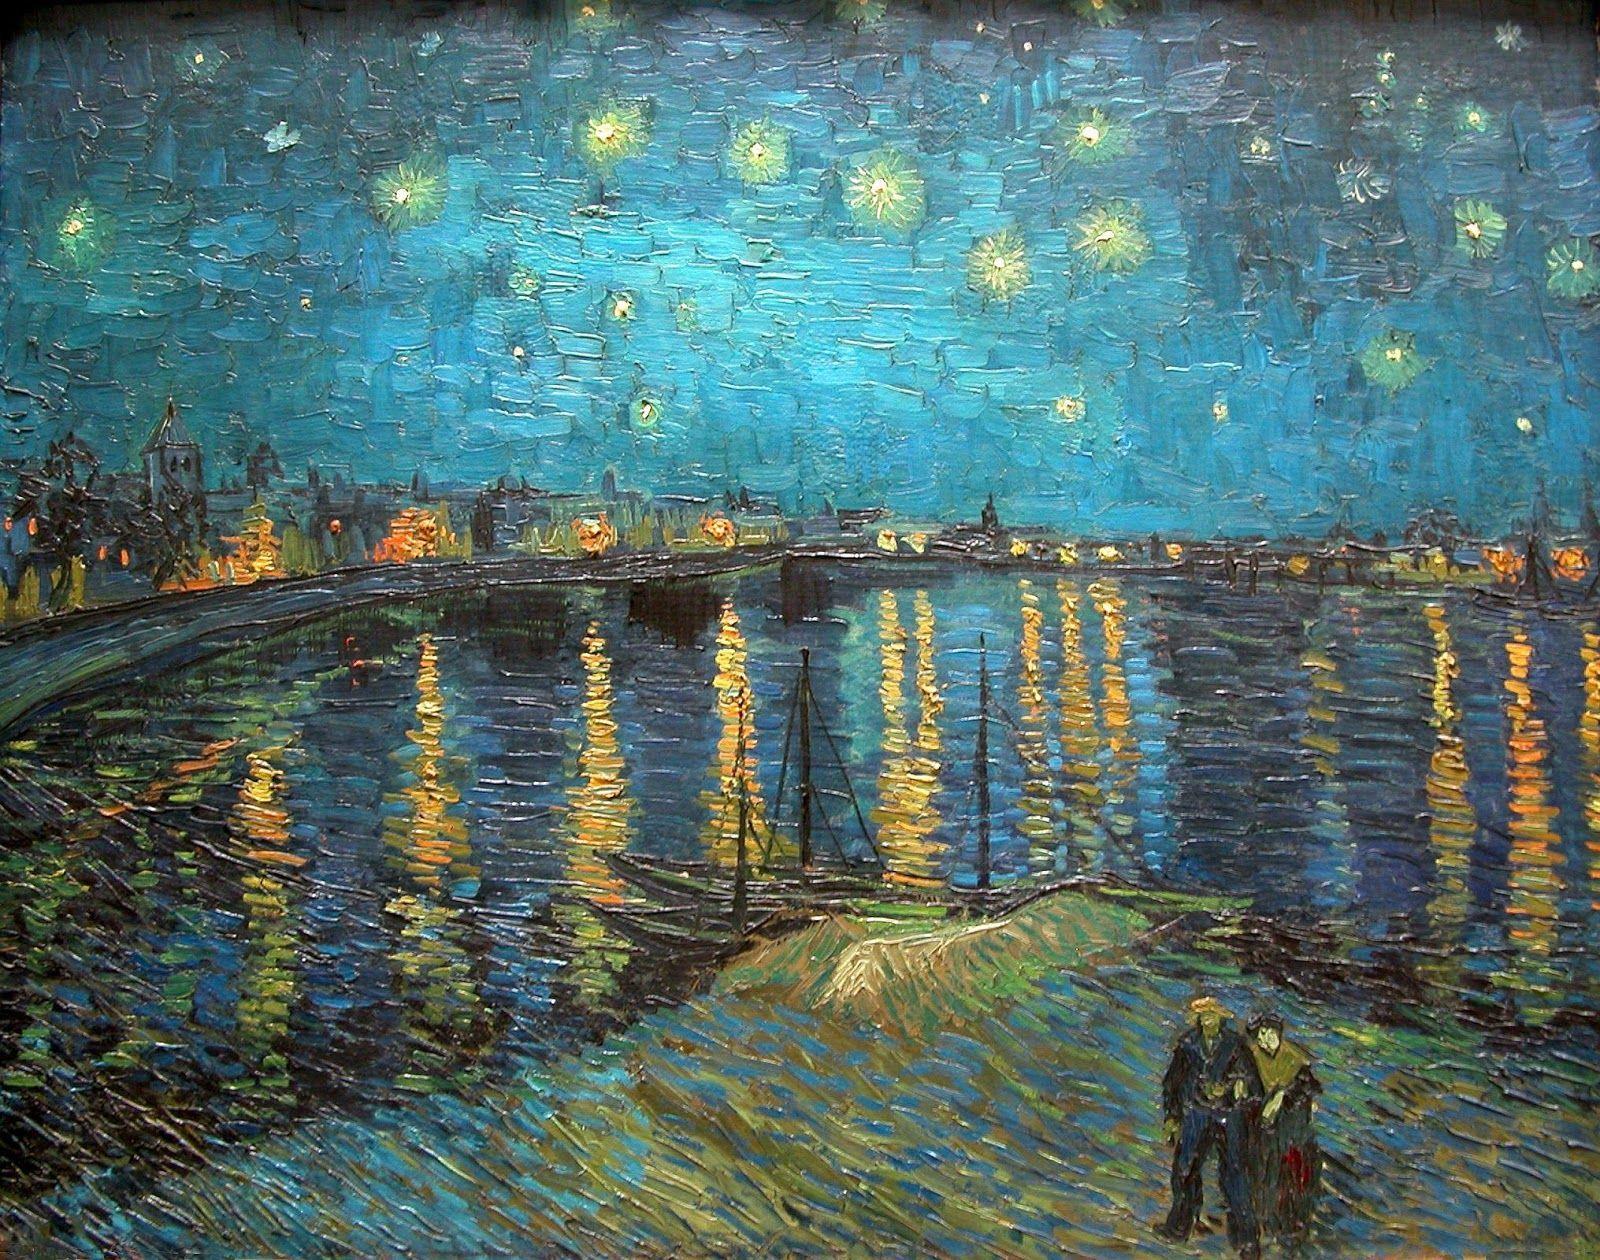 Những tác phẩm nghệ thuật của Vincent Van Gogh làm say đắm lòng người, và với những bức ảnh nền PC được lấy cảm hứng từ bức tranh anh tài, bạn sẽ cảm nhận được điều đó ngay trên máy tính của mình. Hãy truy cập ngay để xem và tải về những hình nền đẹp nhất!